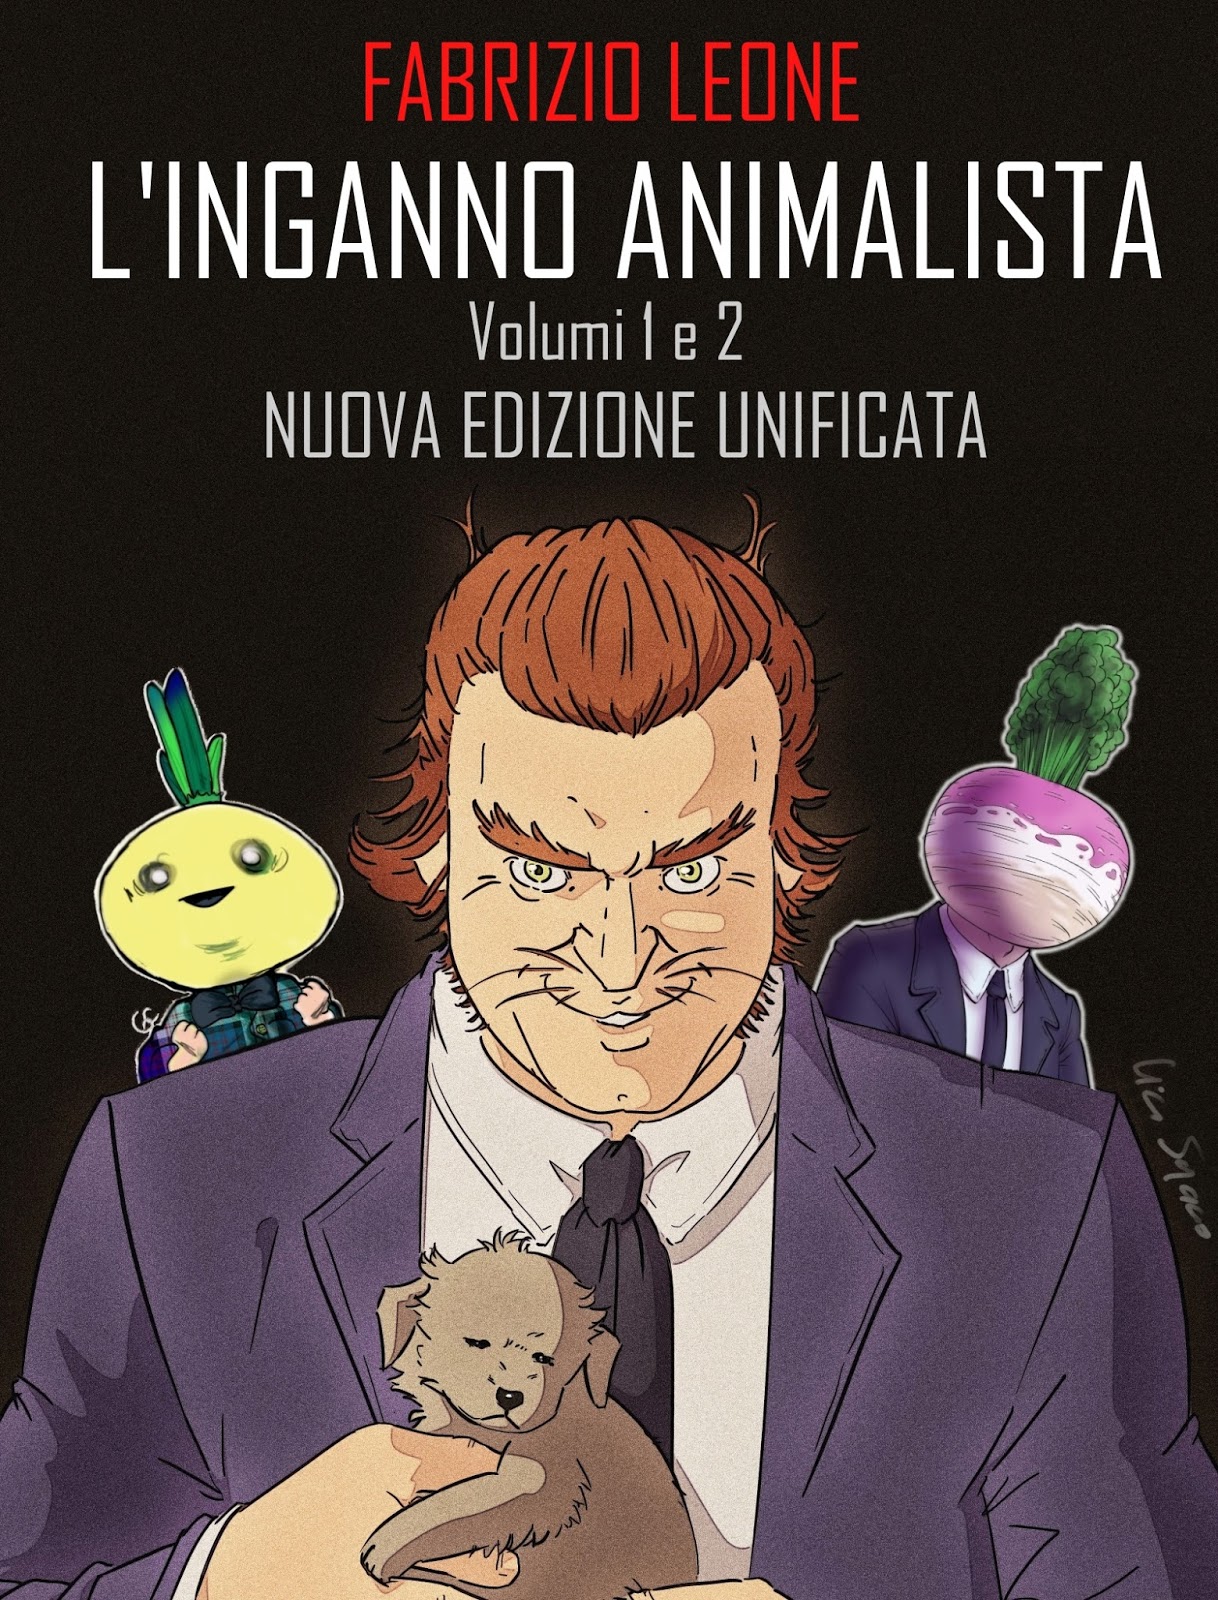 Copertina del libro ''Linganno animalista'' di Fabrizio Leone